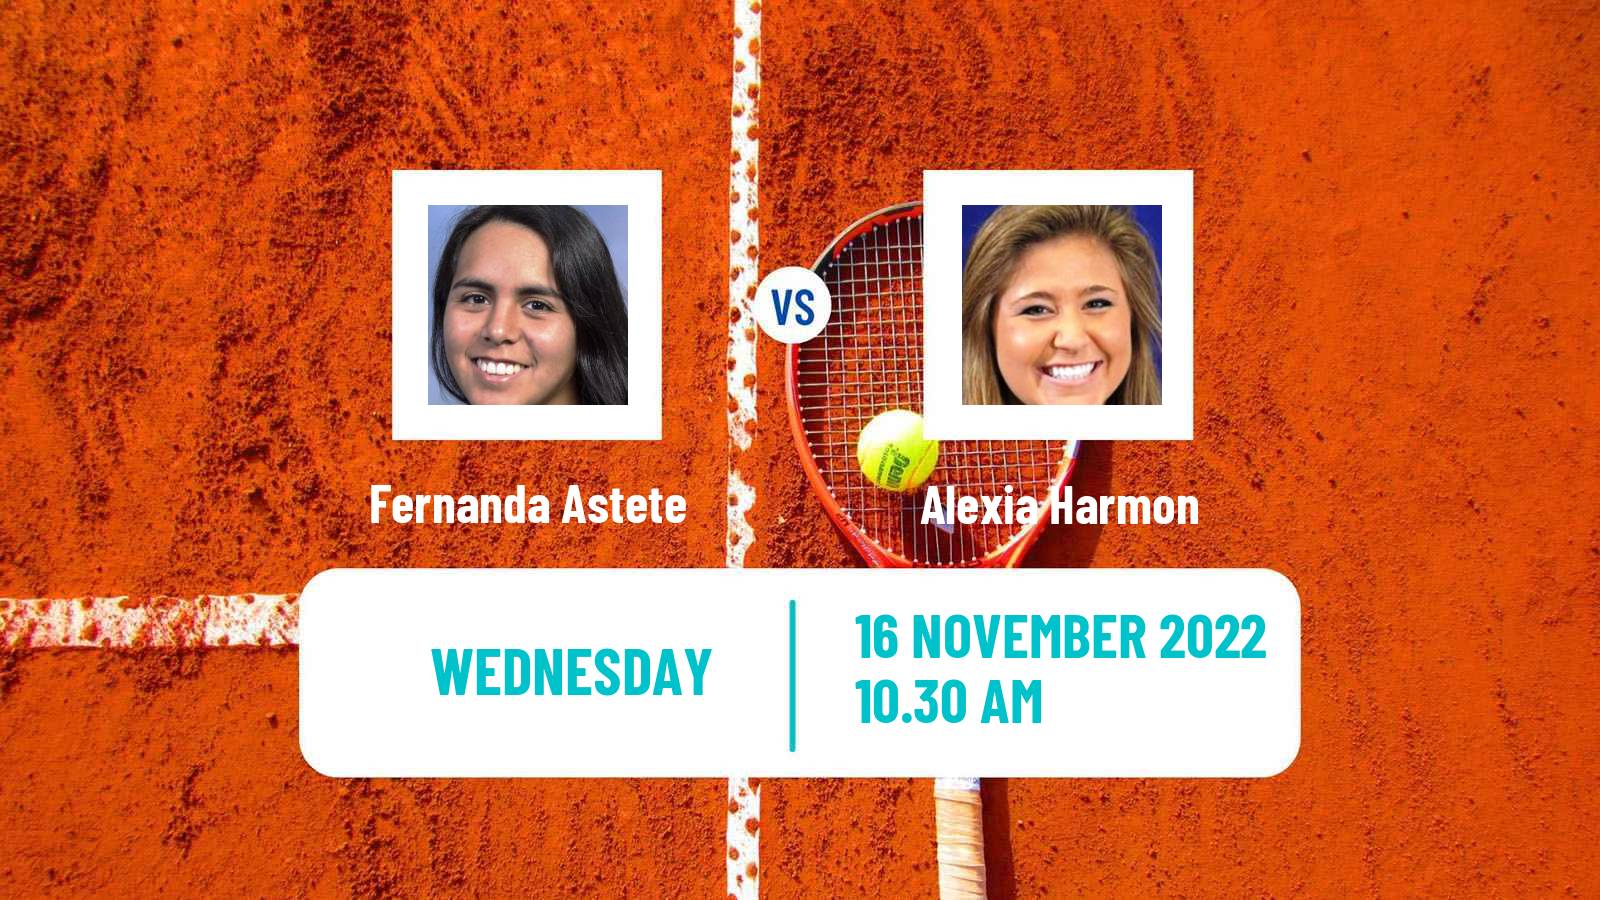 Tennis ITF Tournaments Fernanda Astete - Alexia Harmon